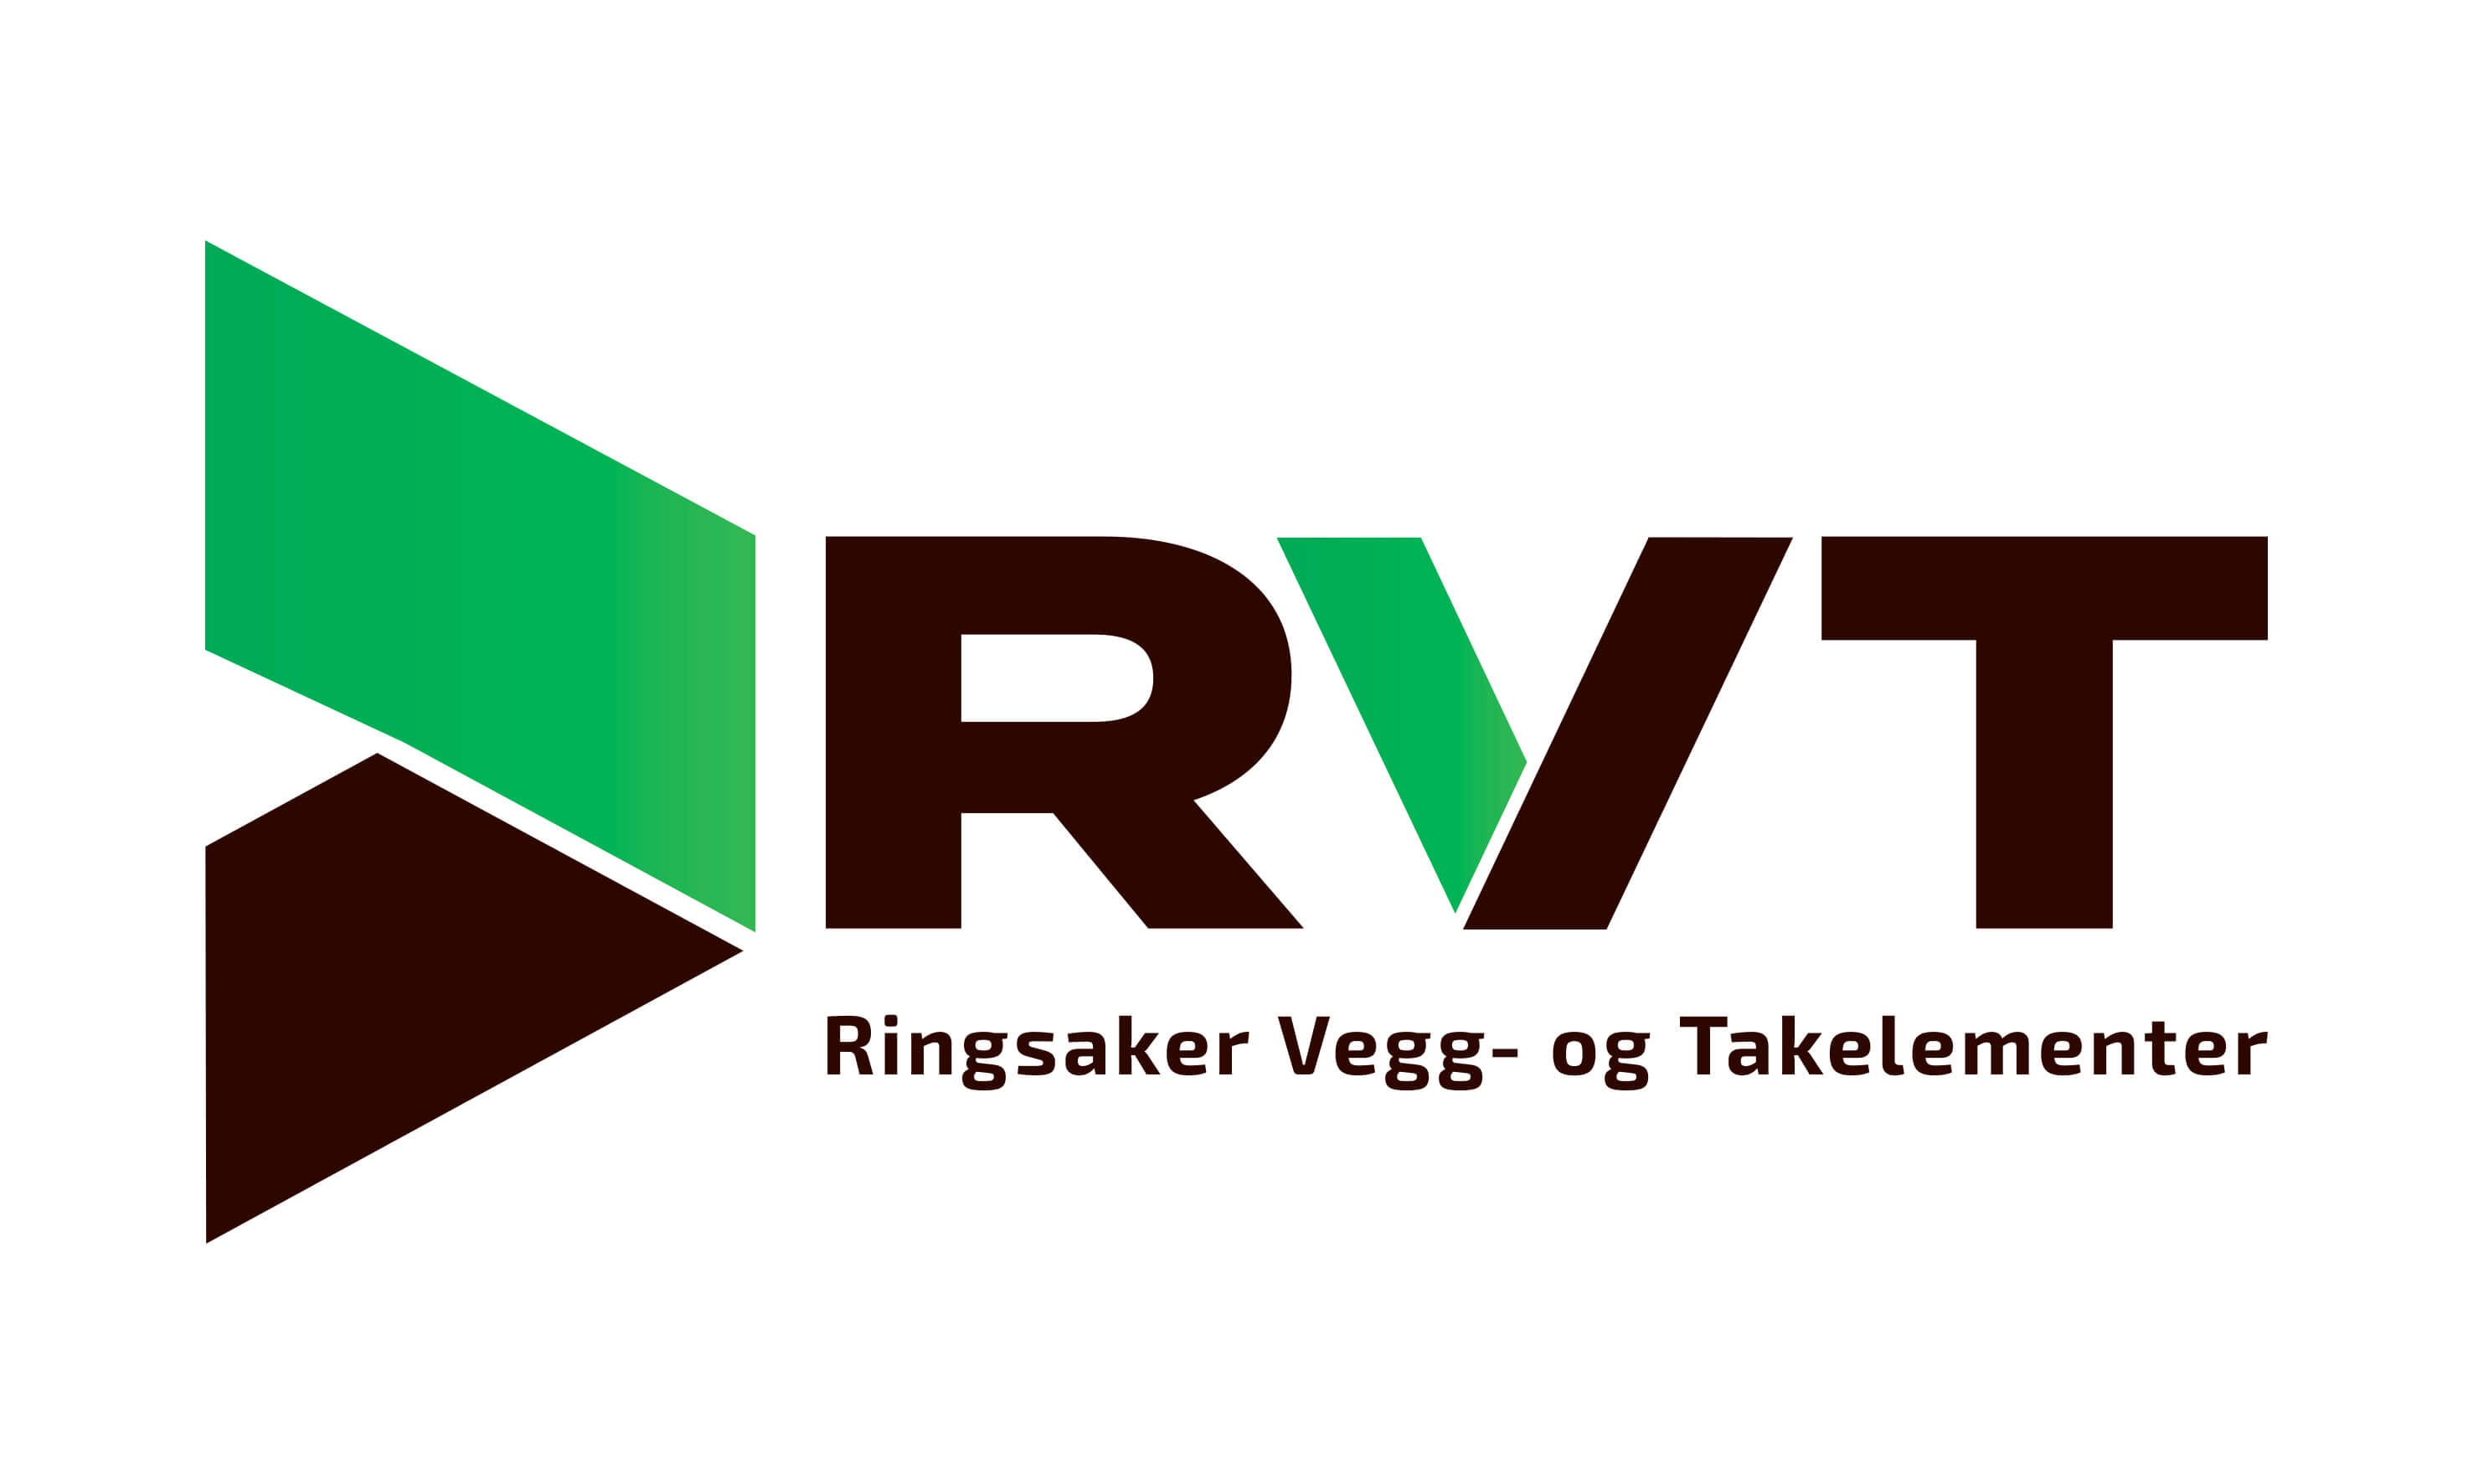 Ringsaker vegg- og takelementer (RVT)